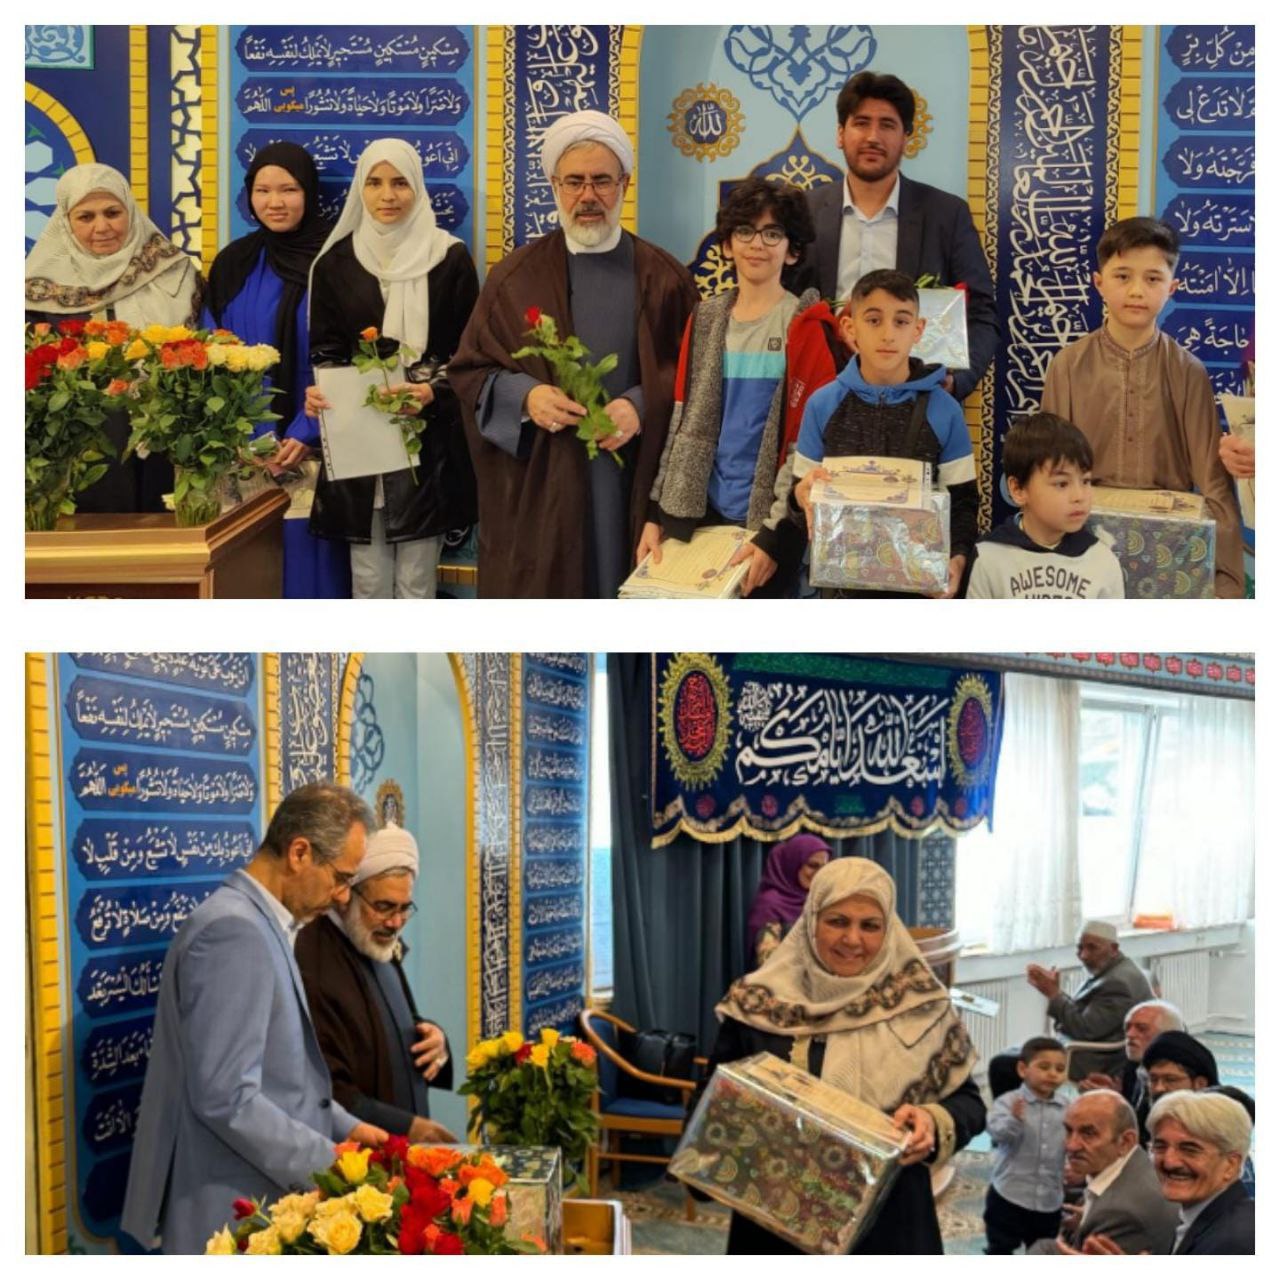 مراسم اهداء جوائز به ممتازین و برندگان هفتمین دوره مسابقات قرآن کریم برگزار شد